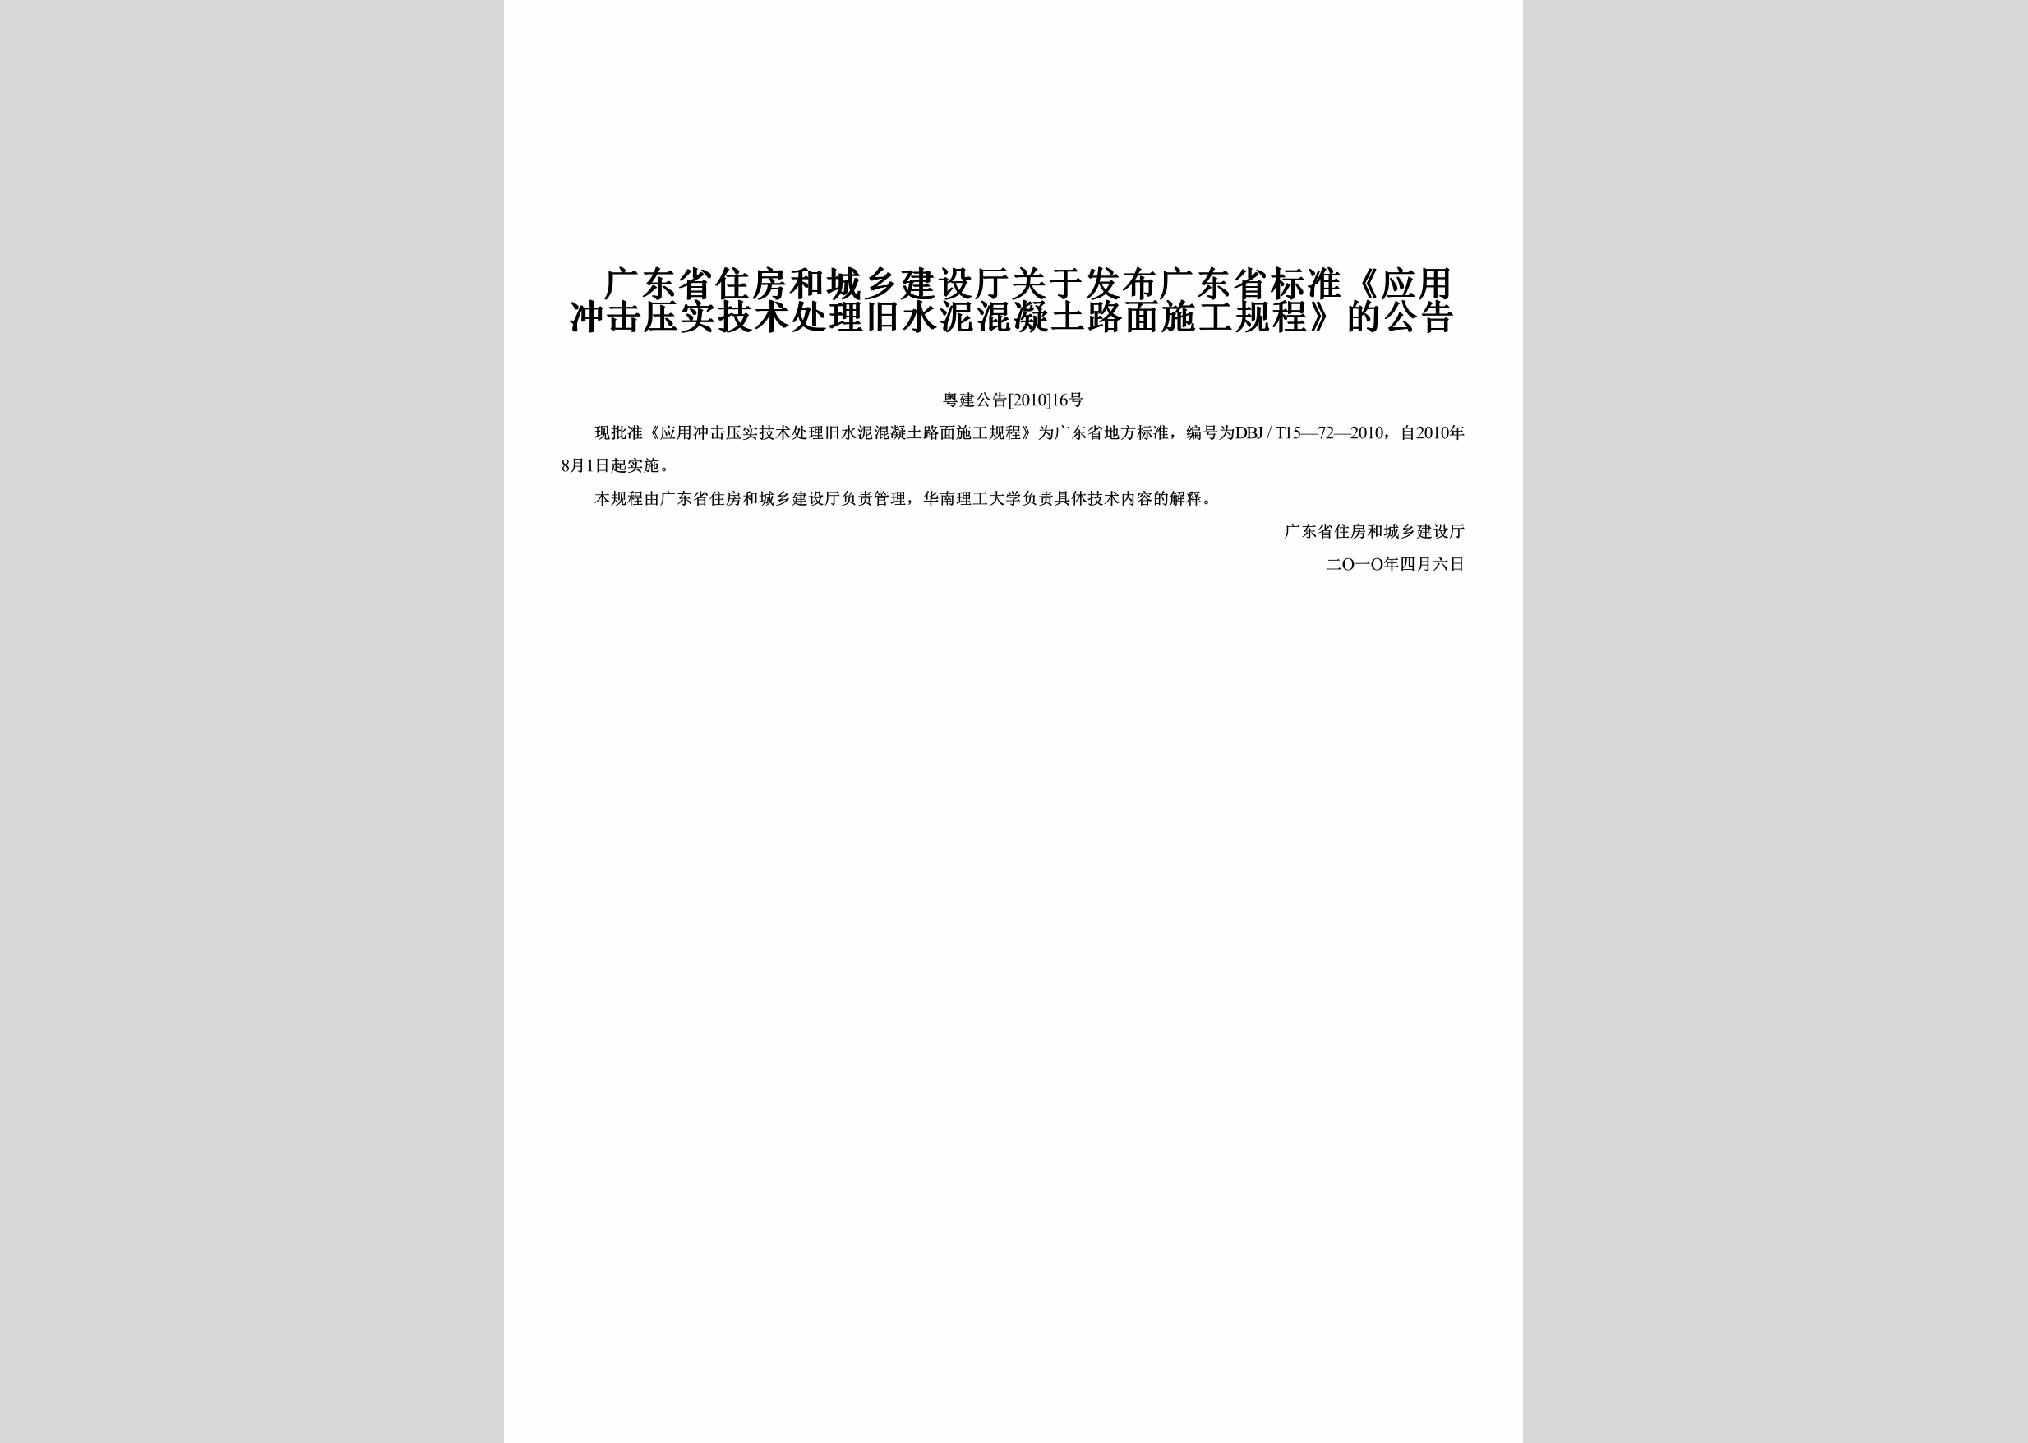 粤建公告[2010]16号：关于发布广东省标准《应用冲击压实技术处理旧水泥混凝土路面施工规程》的公告